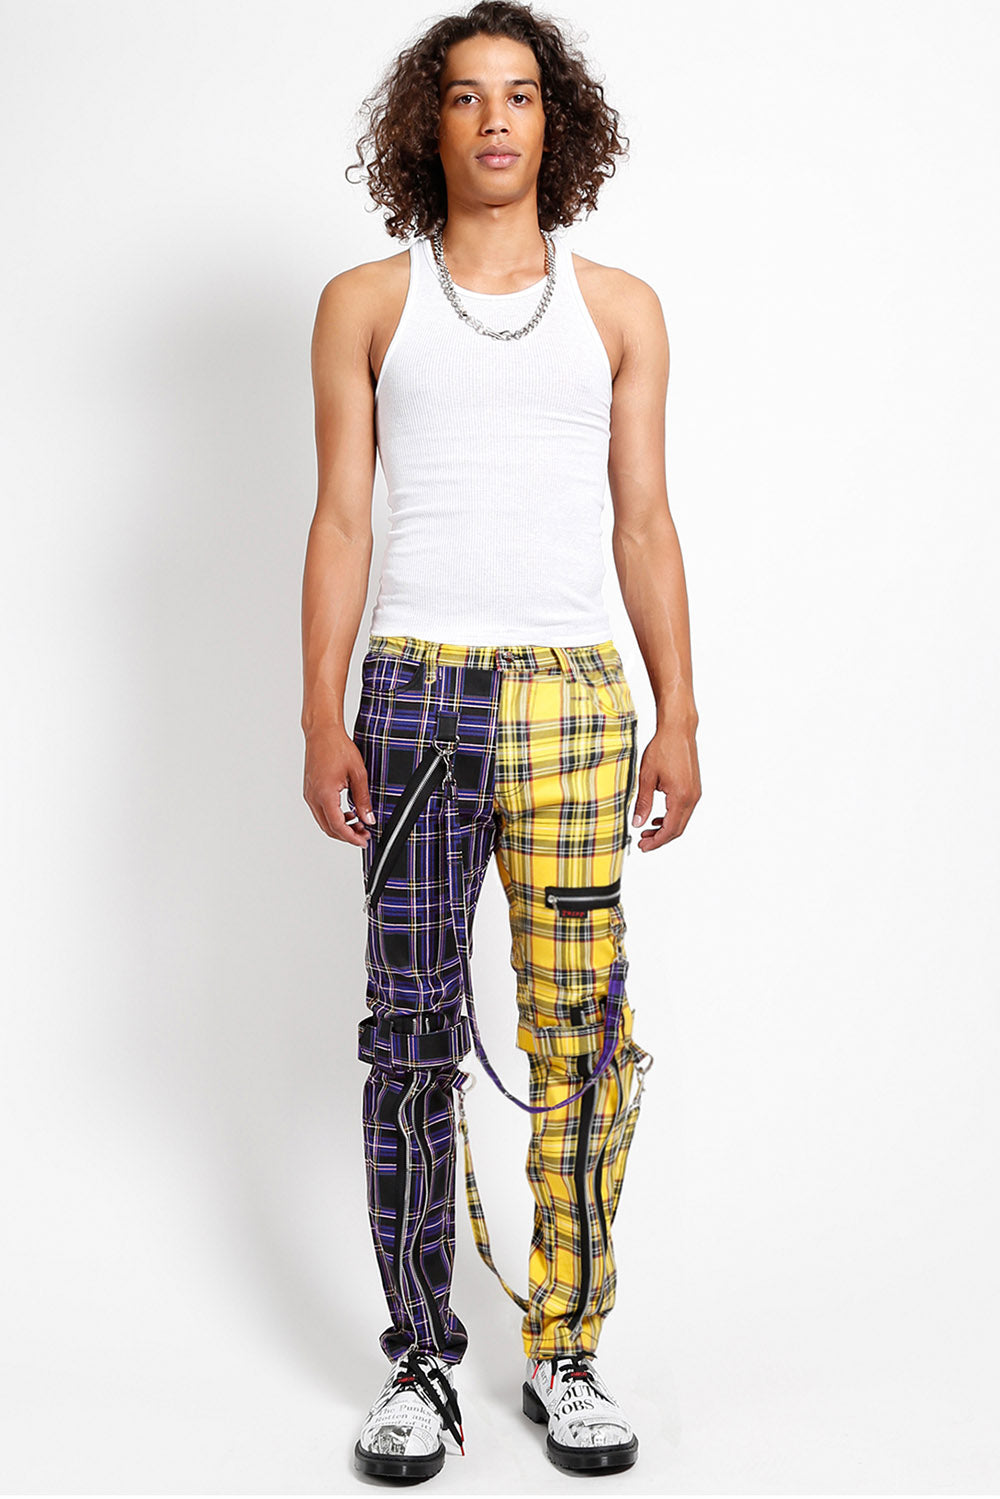 PacSun Arlo Yellow Plaid Menswear Trouser Pants | PacSun